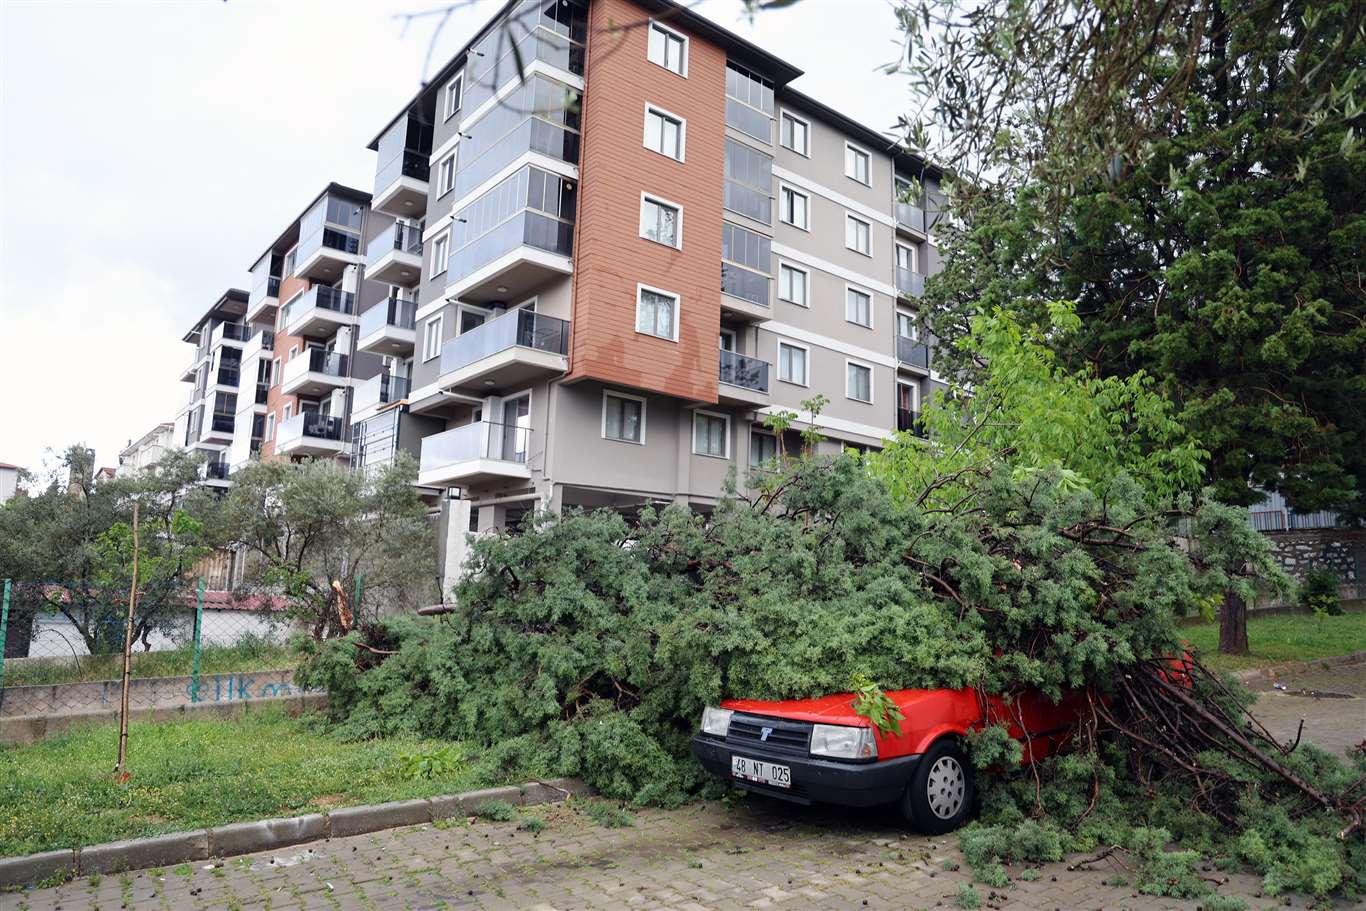 Fırtınada devrilen ağaç, aracın üstüne düştü haberi